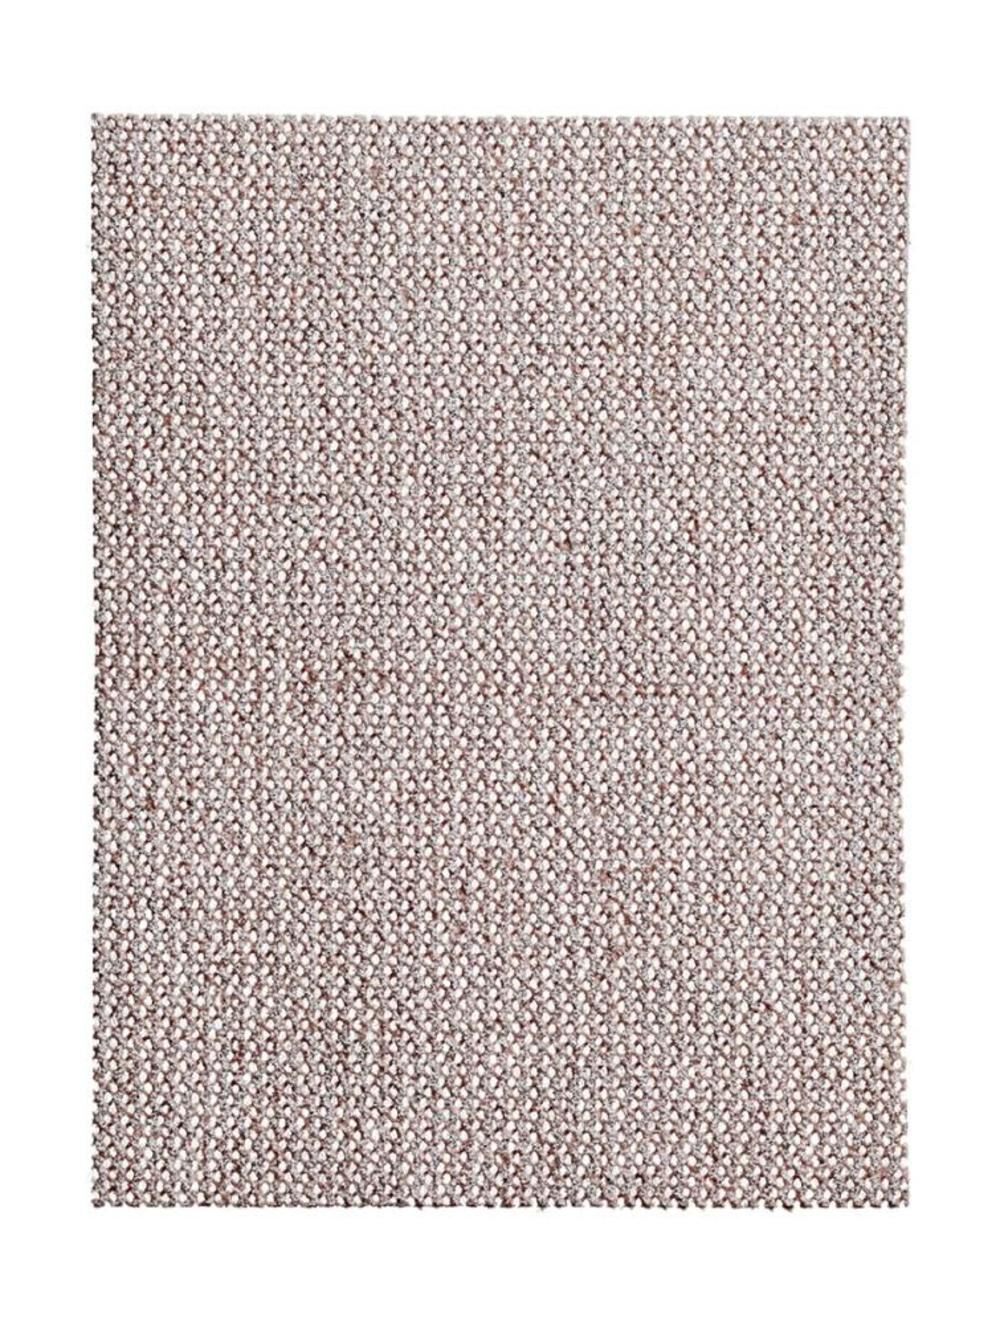 Mirka Abranet Sanding Net Grip Sheet - 2.75 In. x 8 In. 240 Grit